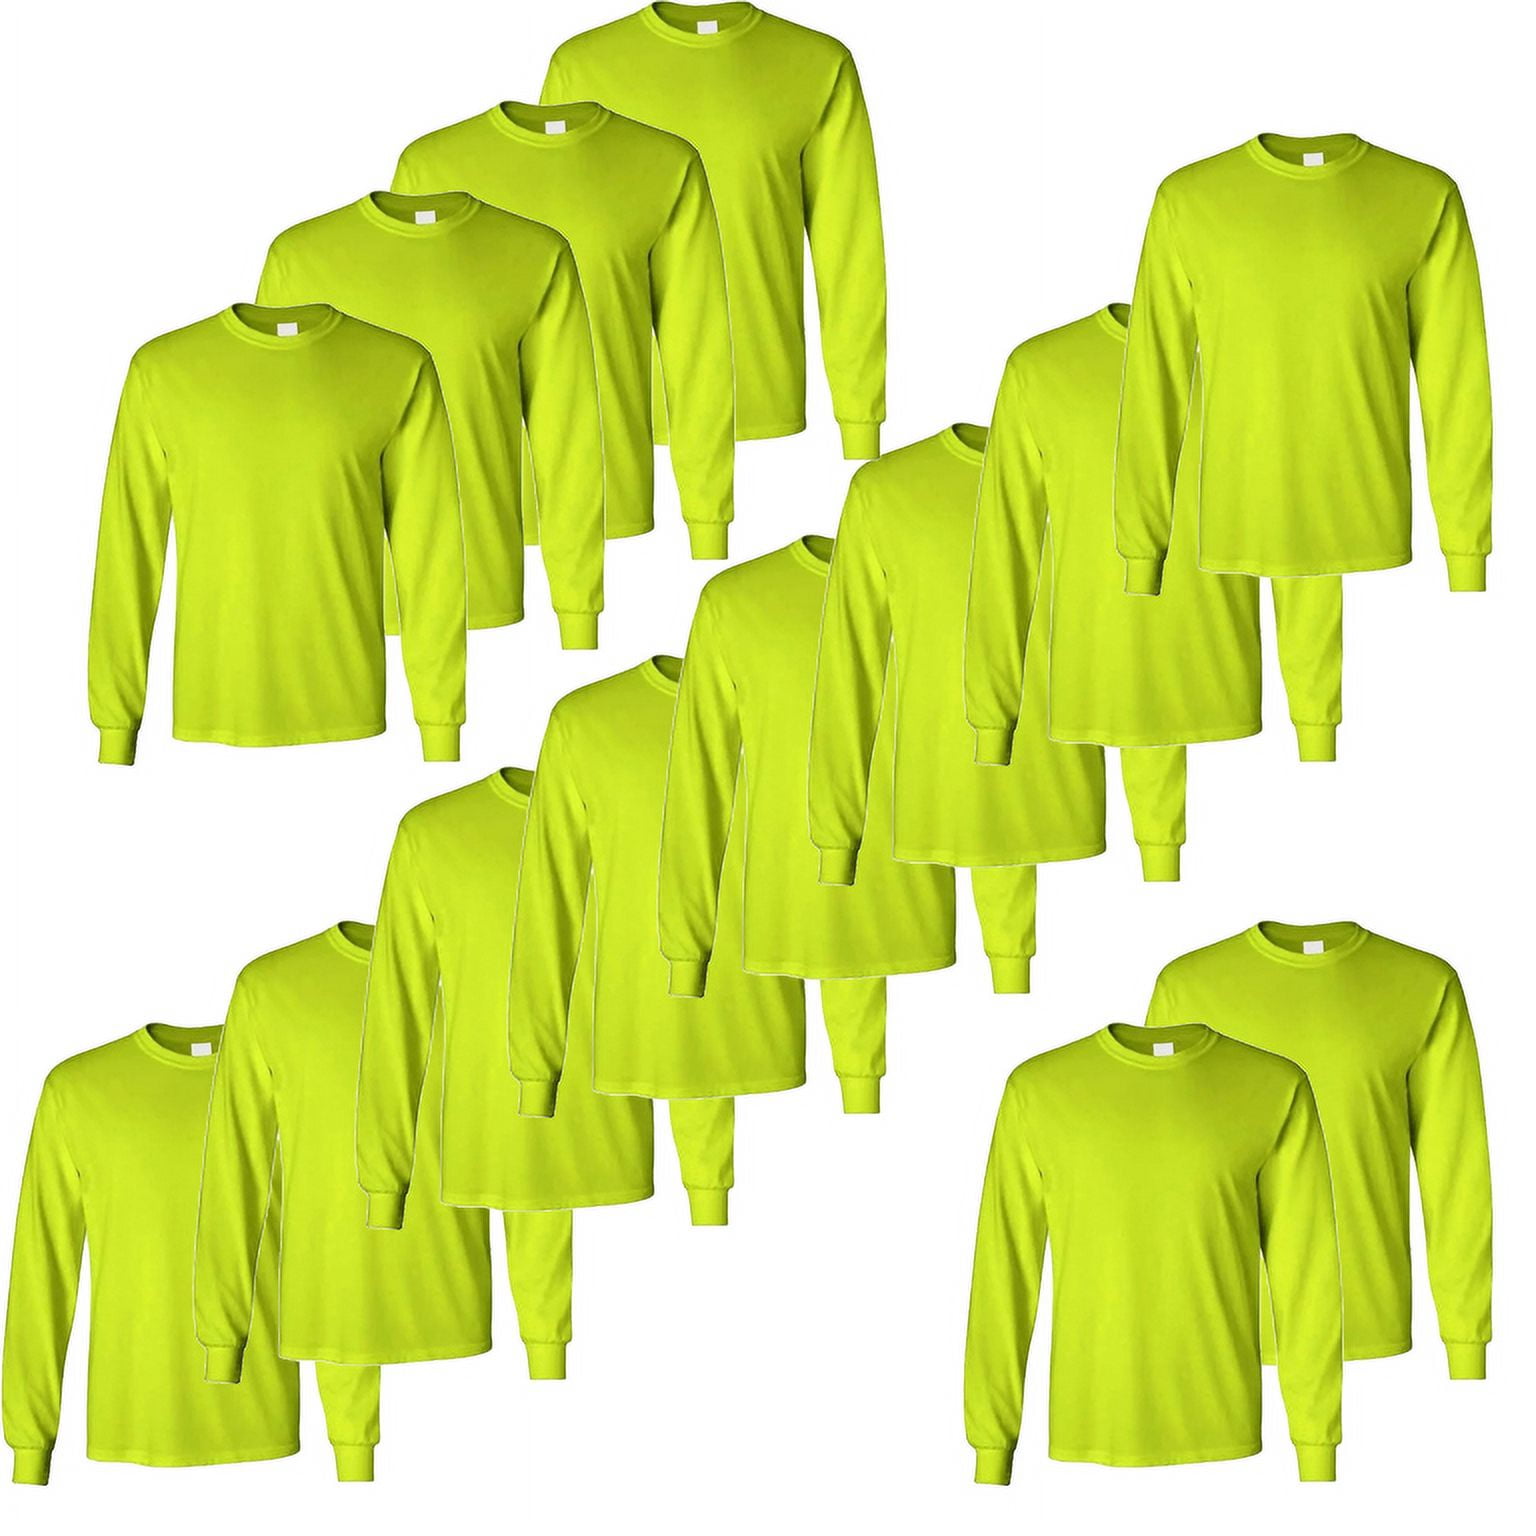 Radyan 14 Pack Long Sleeve (Ropa De Trabajo) Safety Green